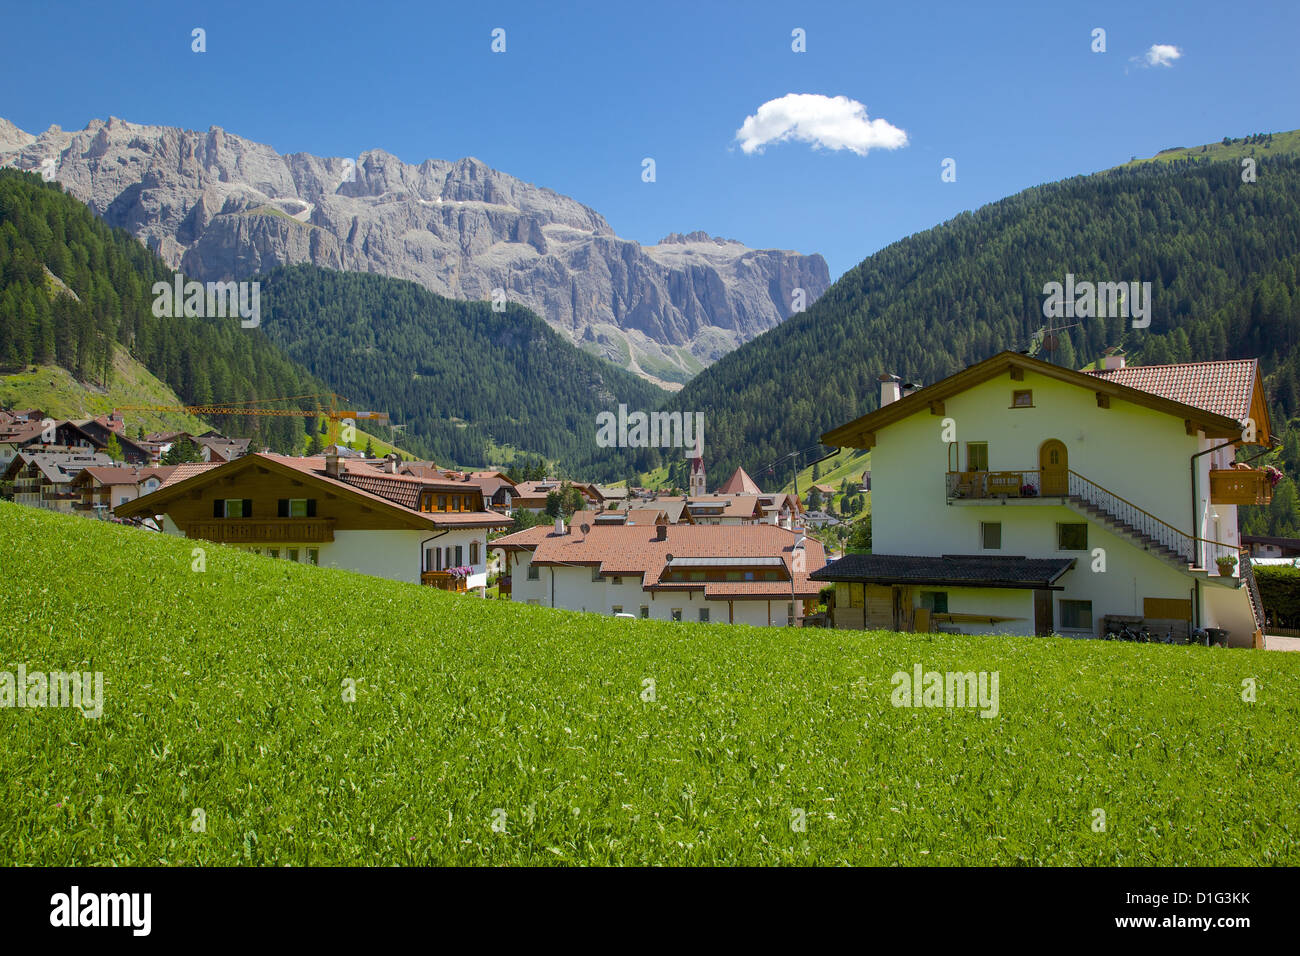 View over town, Selva Gardena, Gardena Valley, Bolzano Province, Trentino-Alto Adige/South Tyrol, Italian Dolomites, Italy Stock Photo